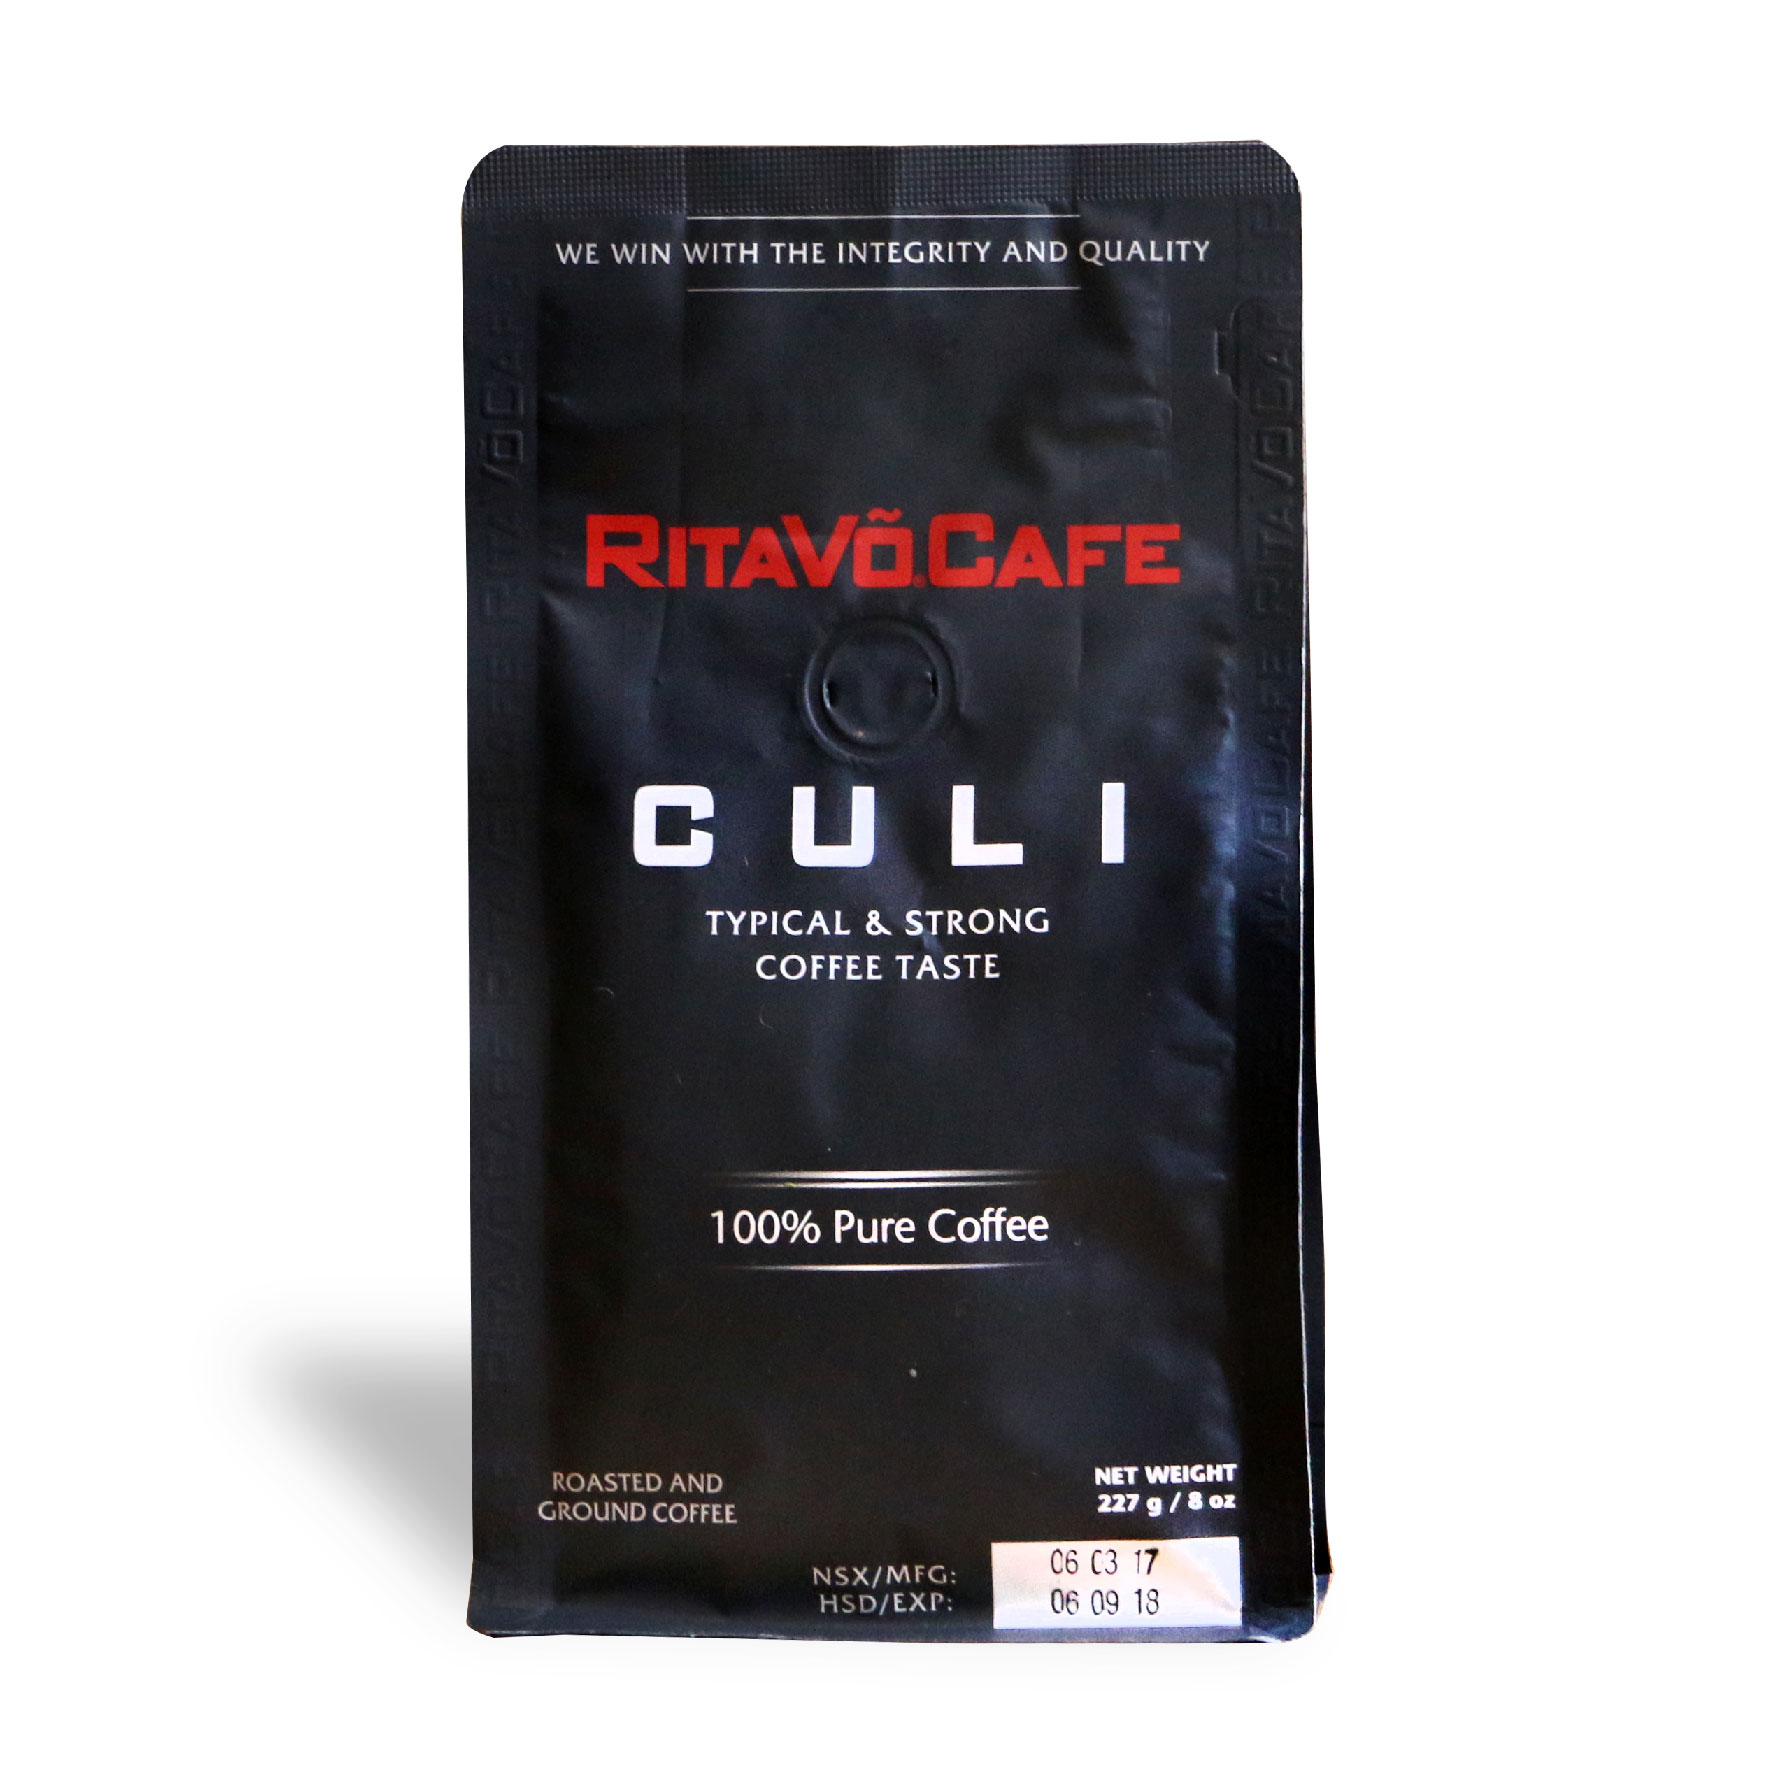 Cà phê rang xay Rita Võ Cafe Culi 1kg